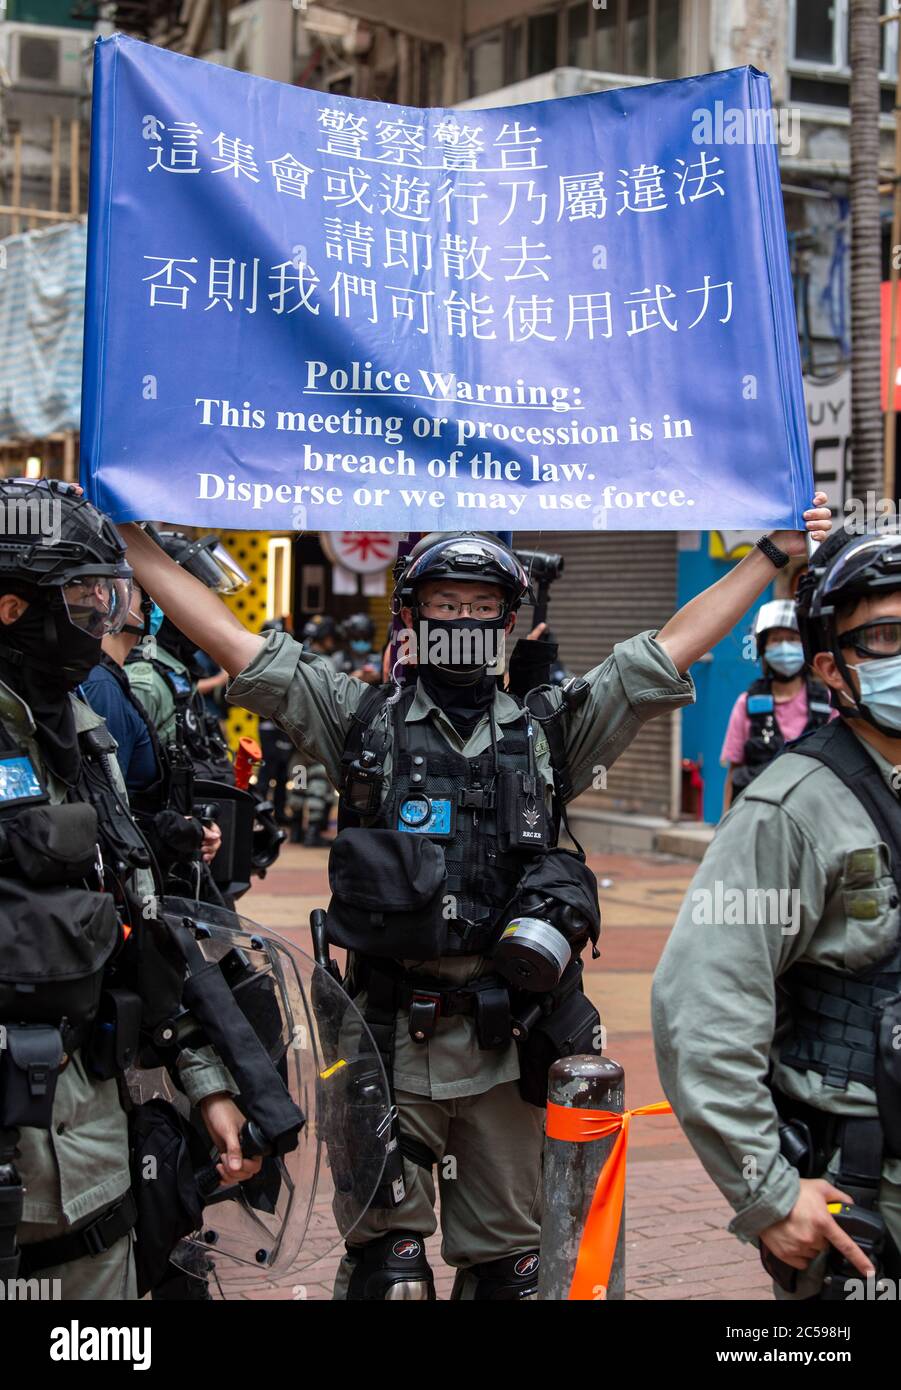 HONG KONG, Hong KONG RAE, CHINA: 1 DE JULIO de 2020.la policía se ocupa de la marcha de protesta ilegal.día de establecimiento de la Región Administrativa Especial de Hong Kong. Veintitrés años después de que Gran Bretaña devolviese a Hong Kong al gobierno chino, Beijing está presionando para implementar nuevas leyes de seguridad nacional duras que suprimirán las protestas pro-democracia que se ven en la ciudad. Romperá la Declaración conjunta sino-británica, donde China aceptó el gobierno de un país, dos sistemas. La prohibición de las marchas tradicionales por primera vez ha enfurecido al público. Alamy Live News/Jayne Russell Foto de stock